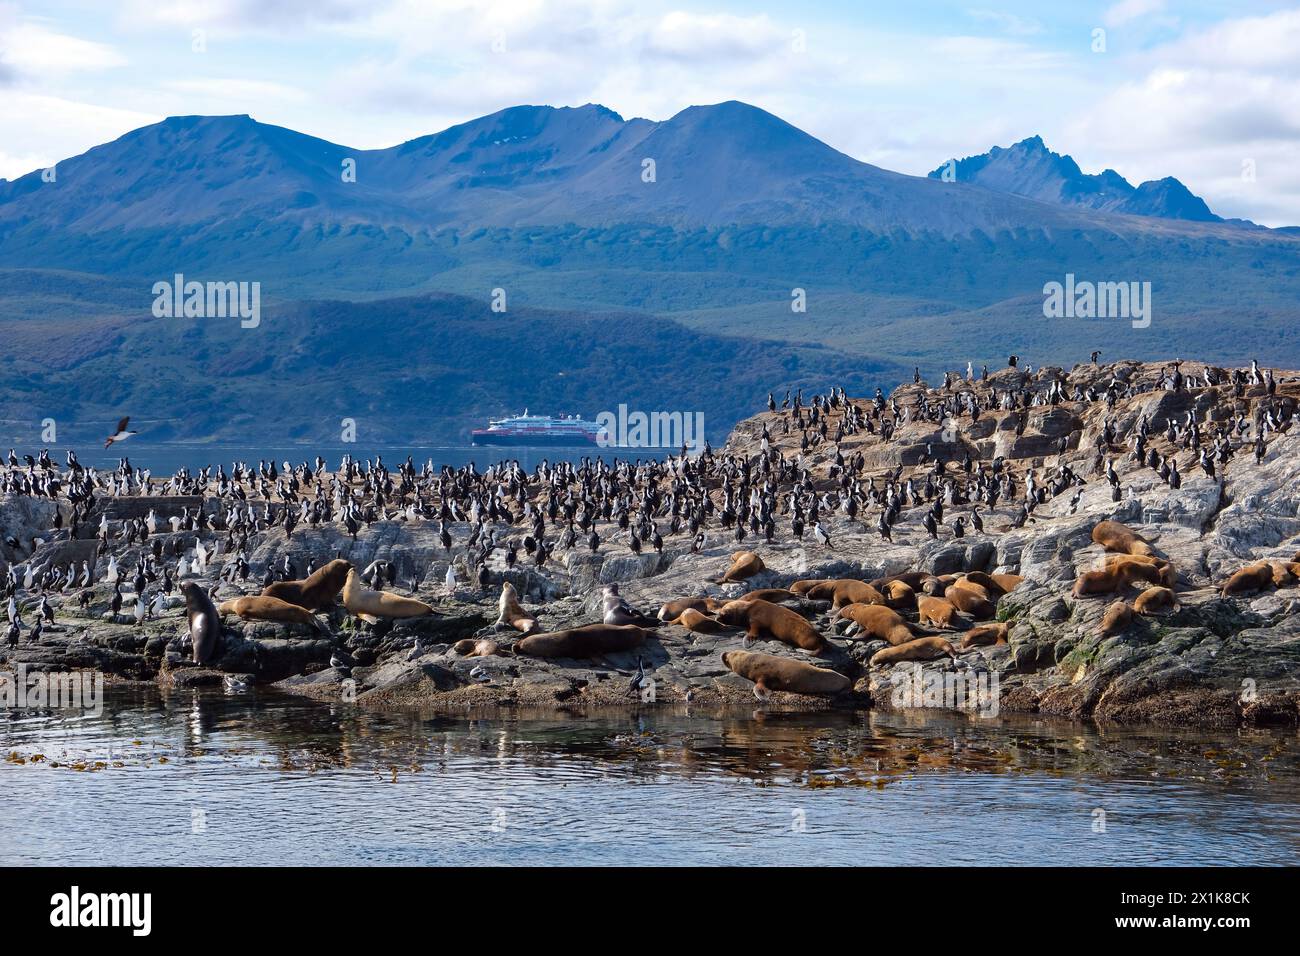 Ushuaia, Tierra del Fuego, Argentinien - Kormorane und Seelöwen thronen auf einem Felsen im Beagle Channel. Der Beagle Channel ist ein natürlicher Wasserweg am Beagle Channel Stockfoto